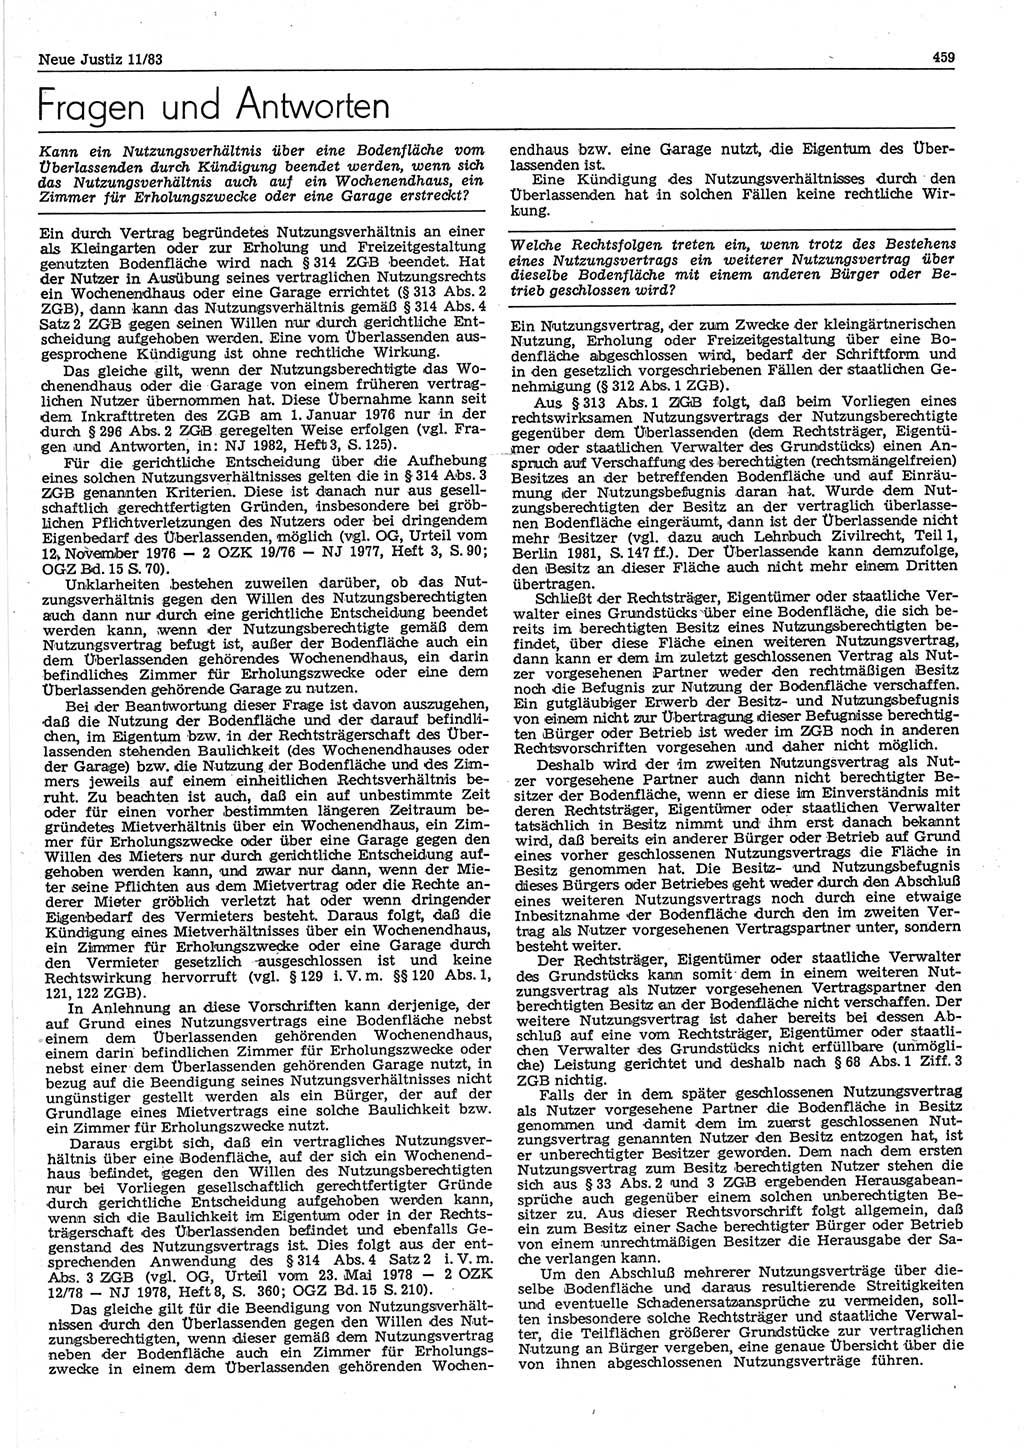 Neue Justiz (NJ), Zeitschrift für sozialistisches Recht und Gesetzlichkeit [Deutsche Demokratische Republik (DDR)], 37. Jahrgang 1983, Seite 459 (NJ DDR 1983, S. 459)